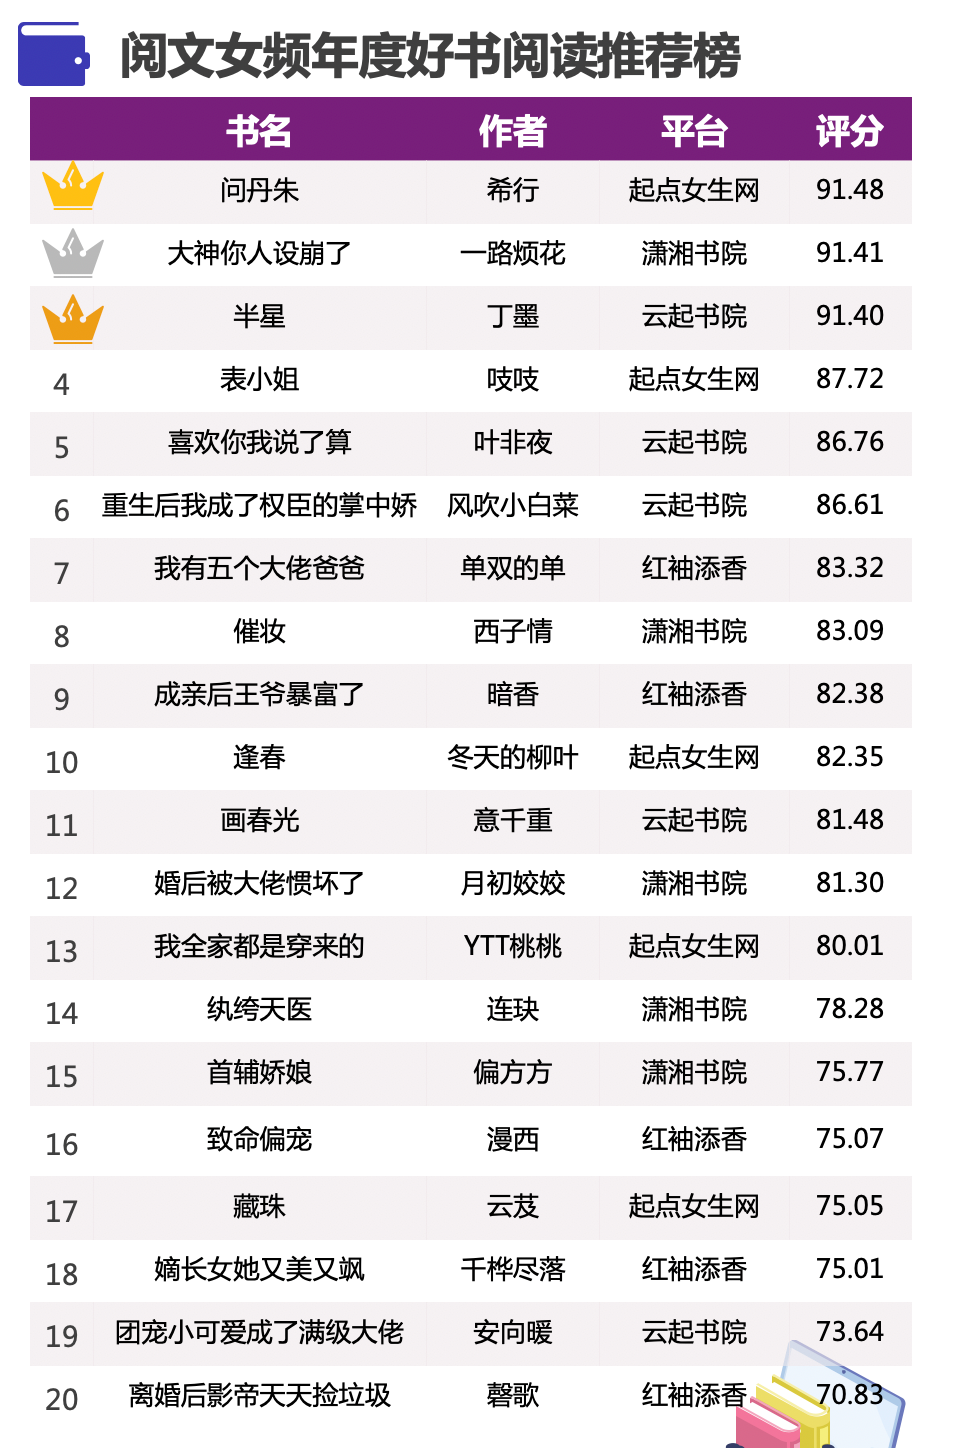 潇湘书院作品排行榜_橙瓜数据|8月连载作品畅销价值榜TOP10,特别人气风云榜TOP50